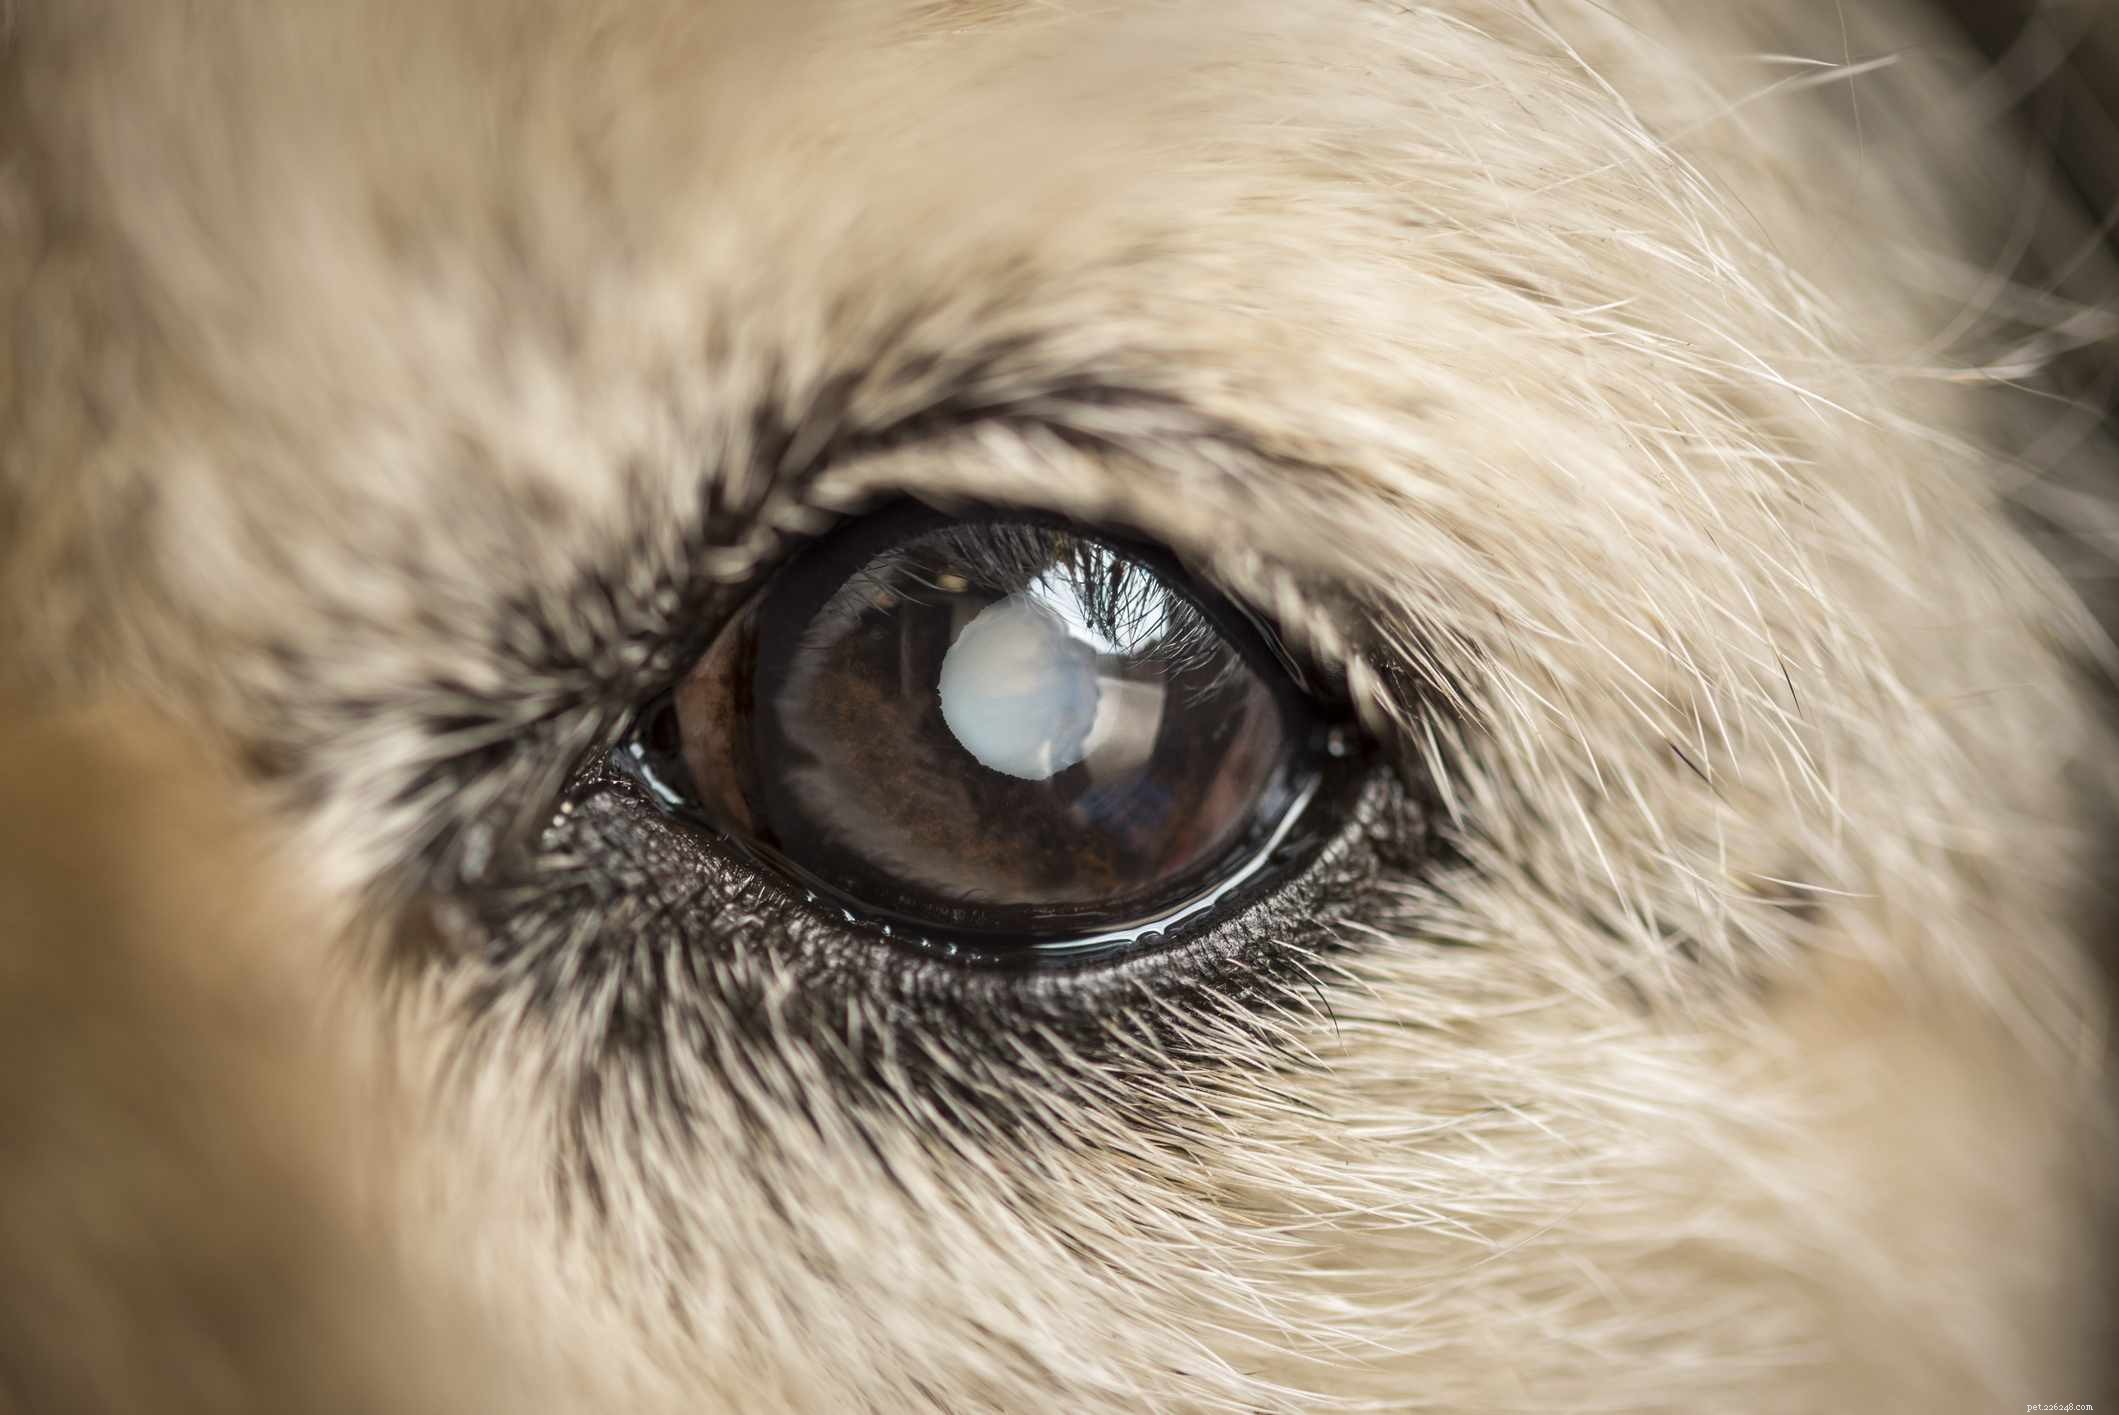 Comment traiter la cataracte chez le chien